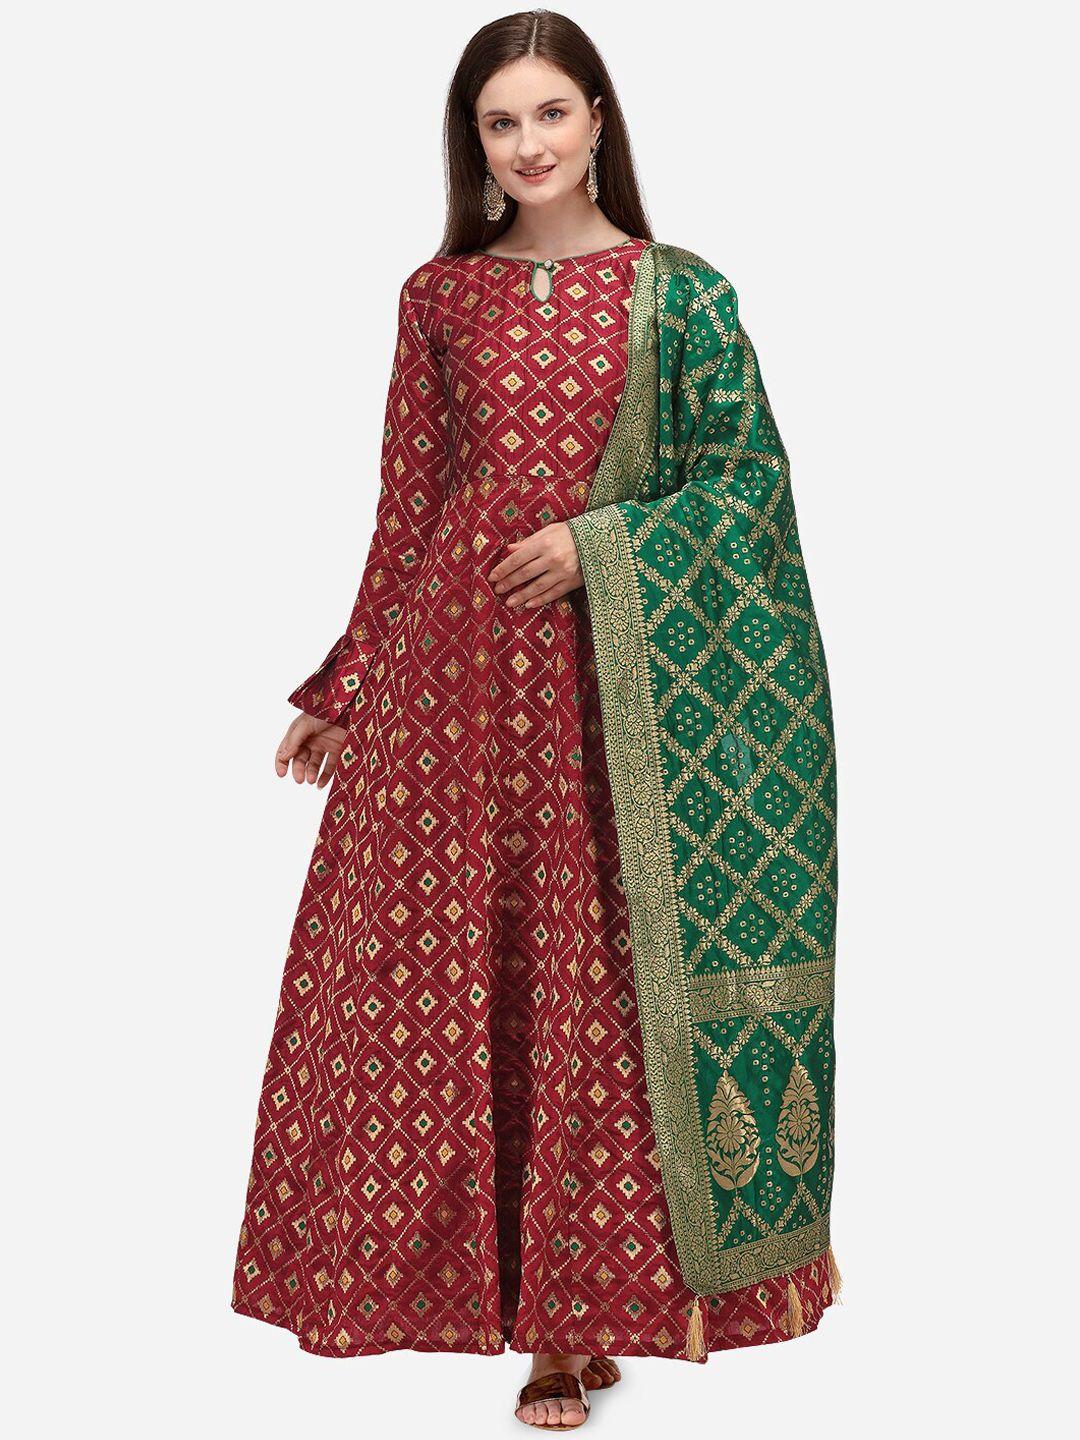 purvaja women maroon & golden self-design semi-stitched maxi dress with dupatta